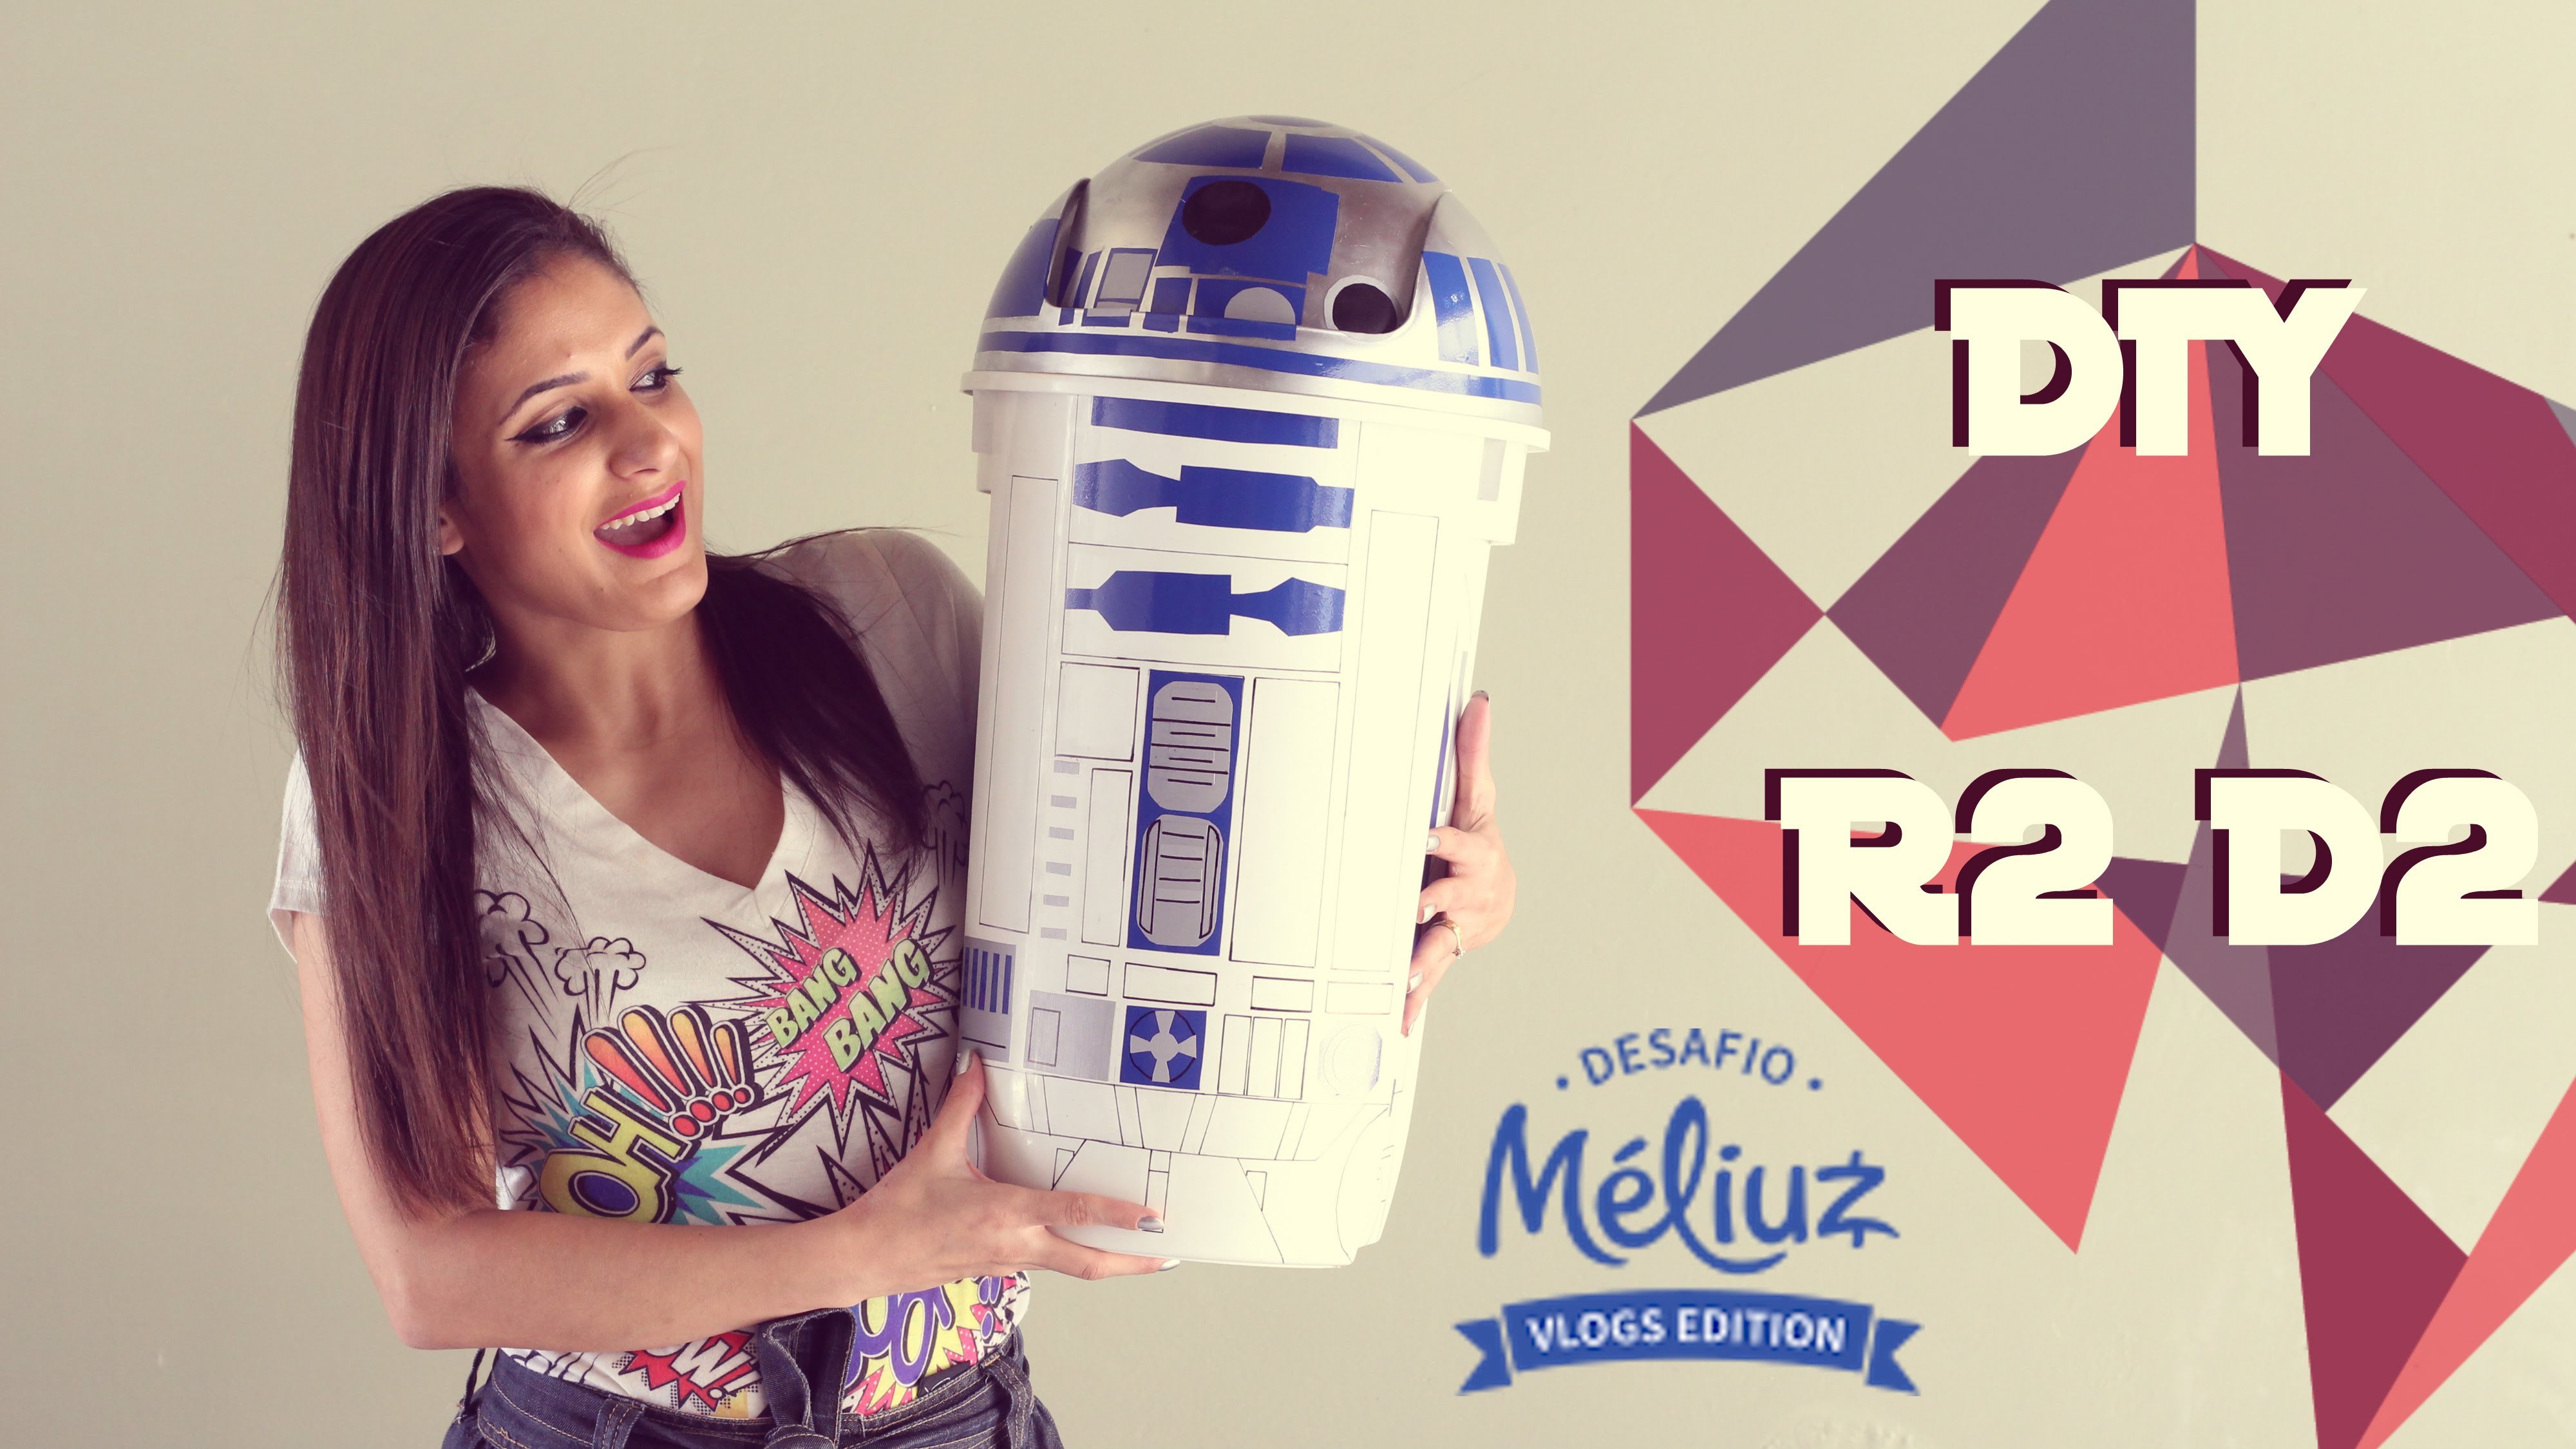 Desafio Méliuz | DIY - R2 D2 Star Wars